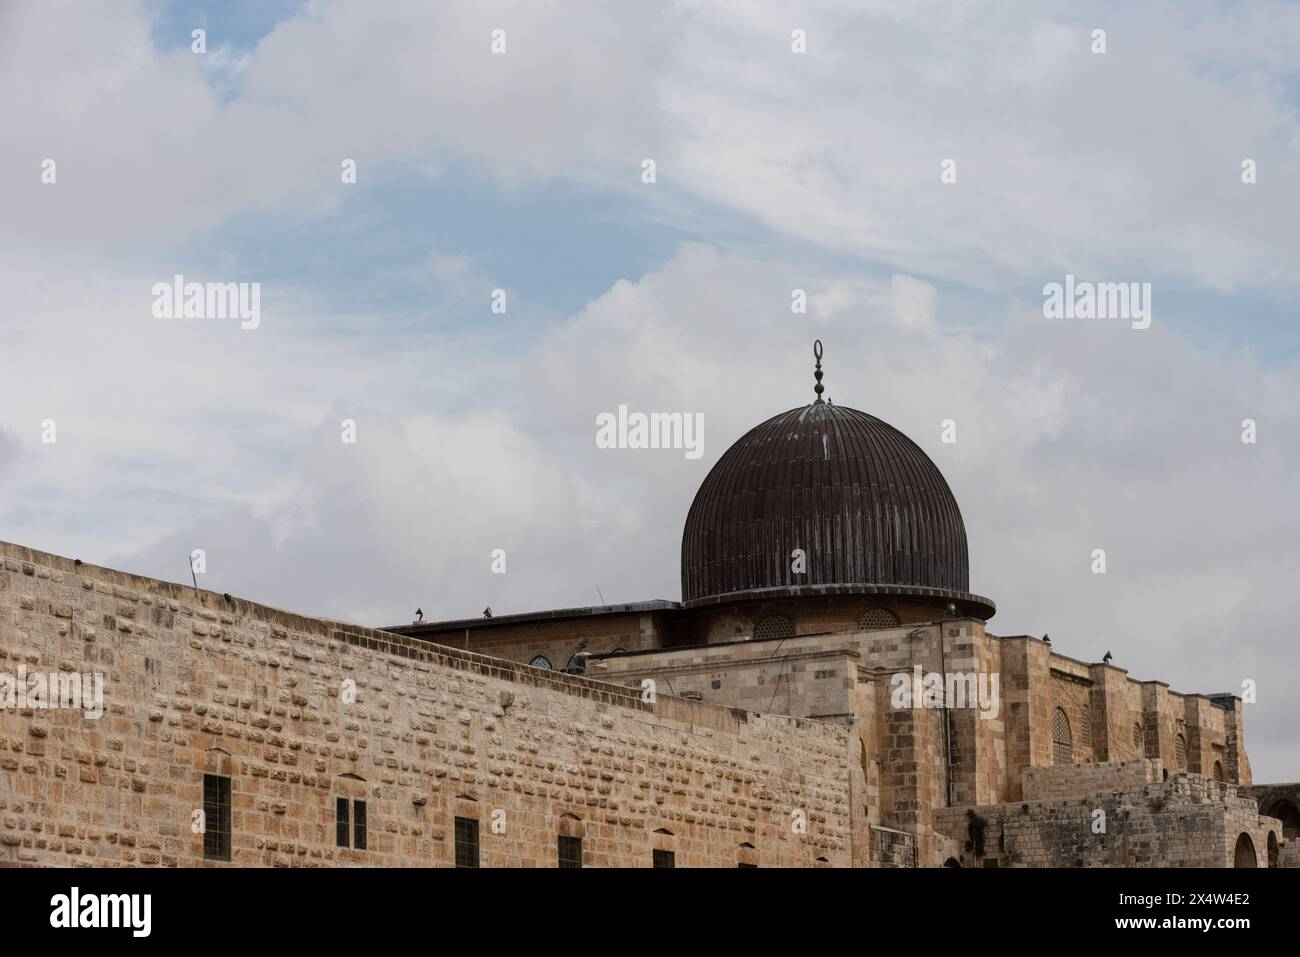 Die schwarze Kuppel der Al Aqsa Moschee, eine islamische heilige Stätte, auf dem Tempelberg oder Haram al-Sharif in der Altstadt von Jerusalem, Israel. Stockfoto